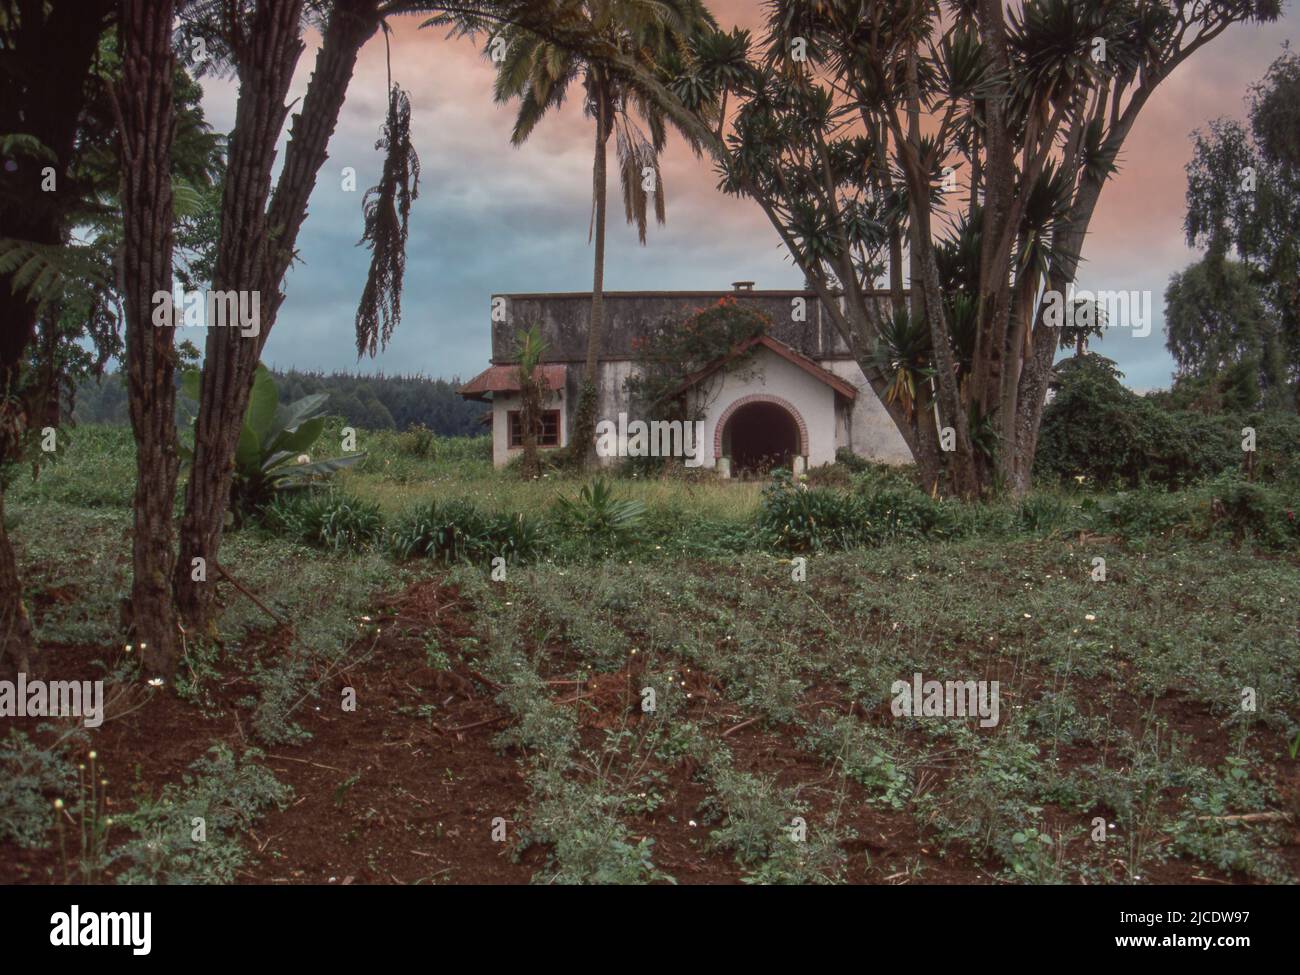 Ferme abandonnée pendant la guerre civile rwandaise 1990-1994, culture de pyrèthre. Pyrèthre, insecticide naturel à base de fleurs séchées. Cultivés comme cultures au Rwanda. Banque D'Images